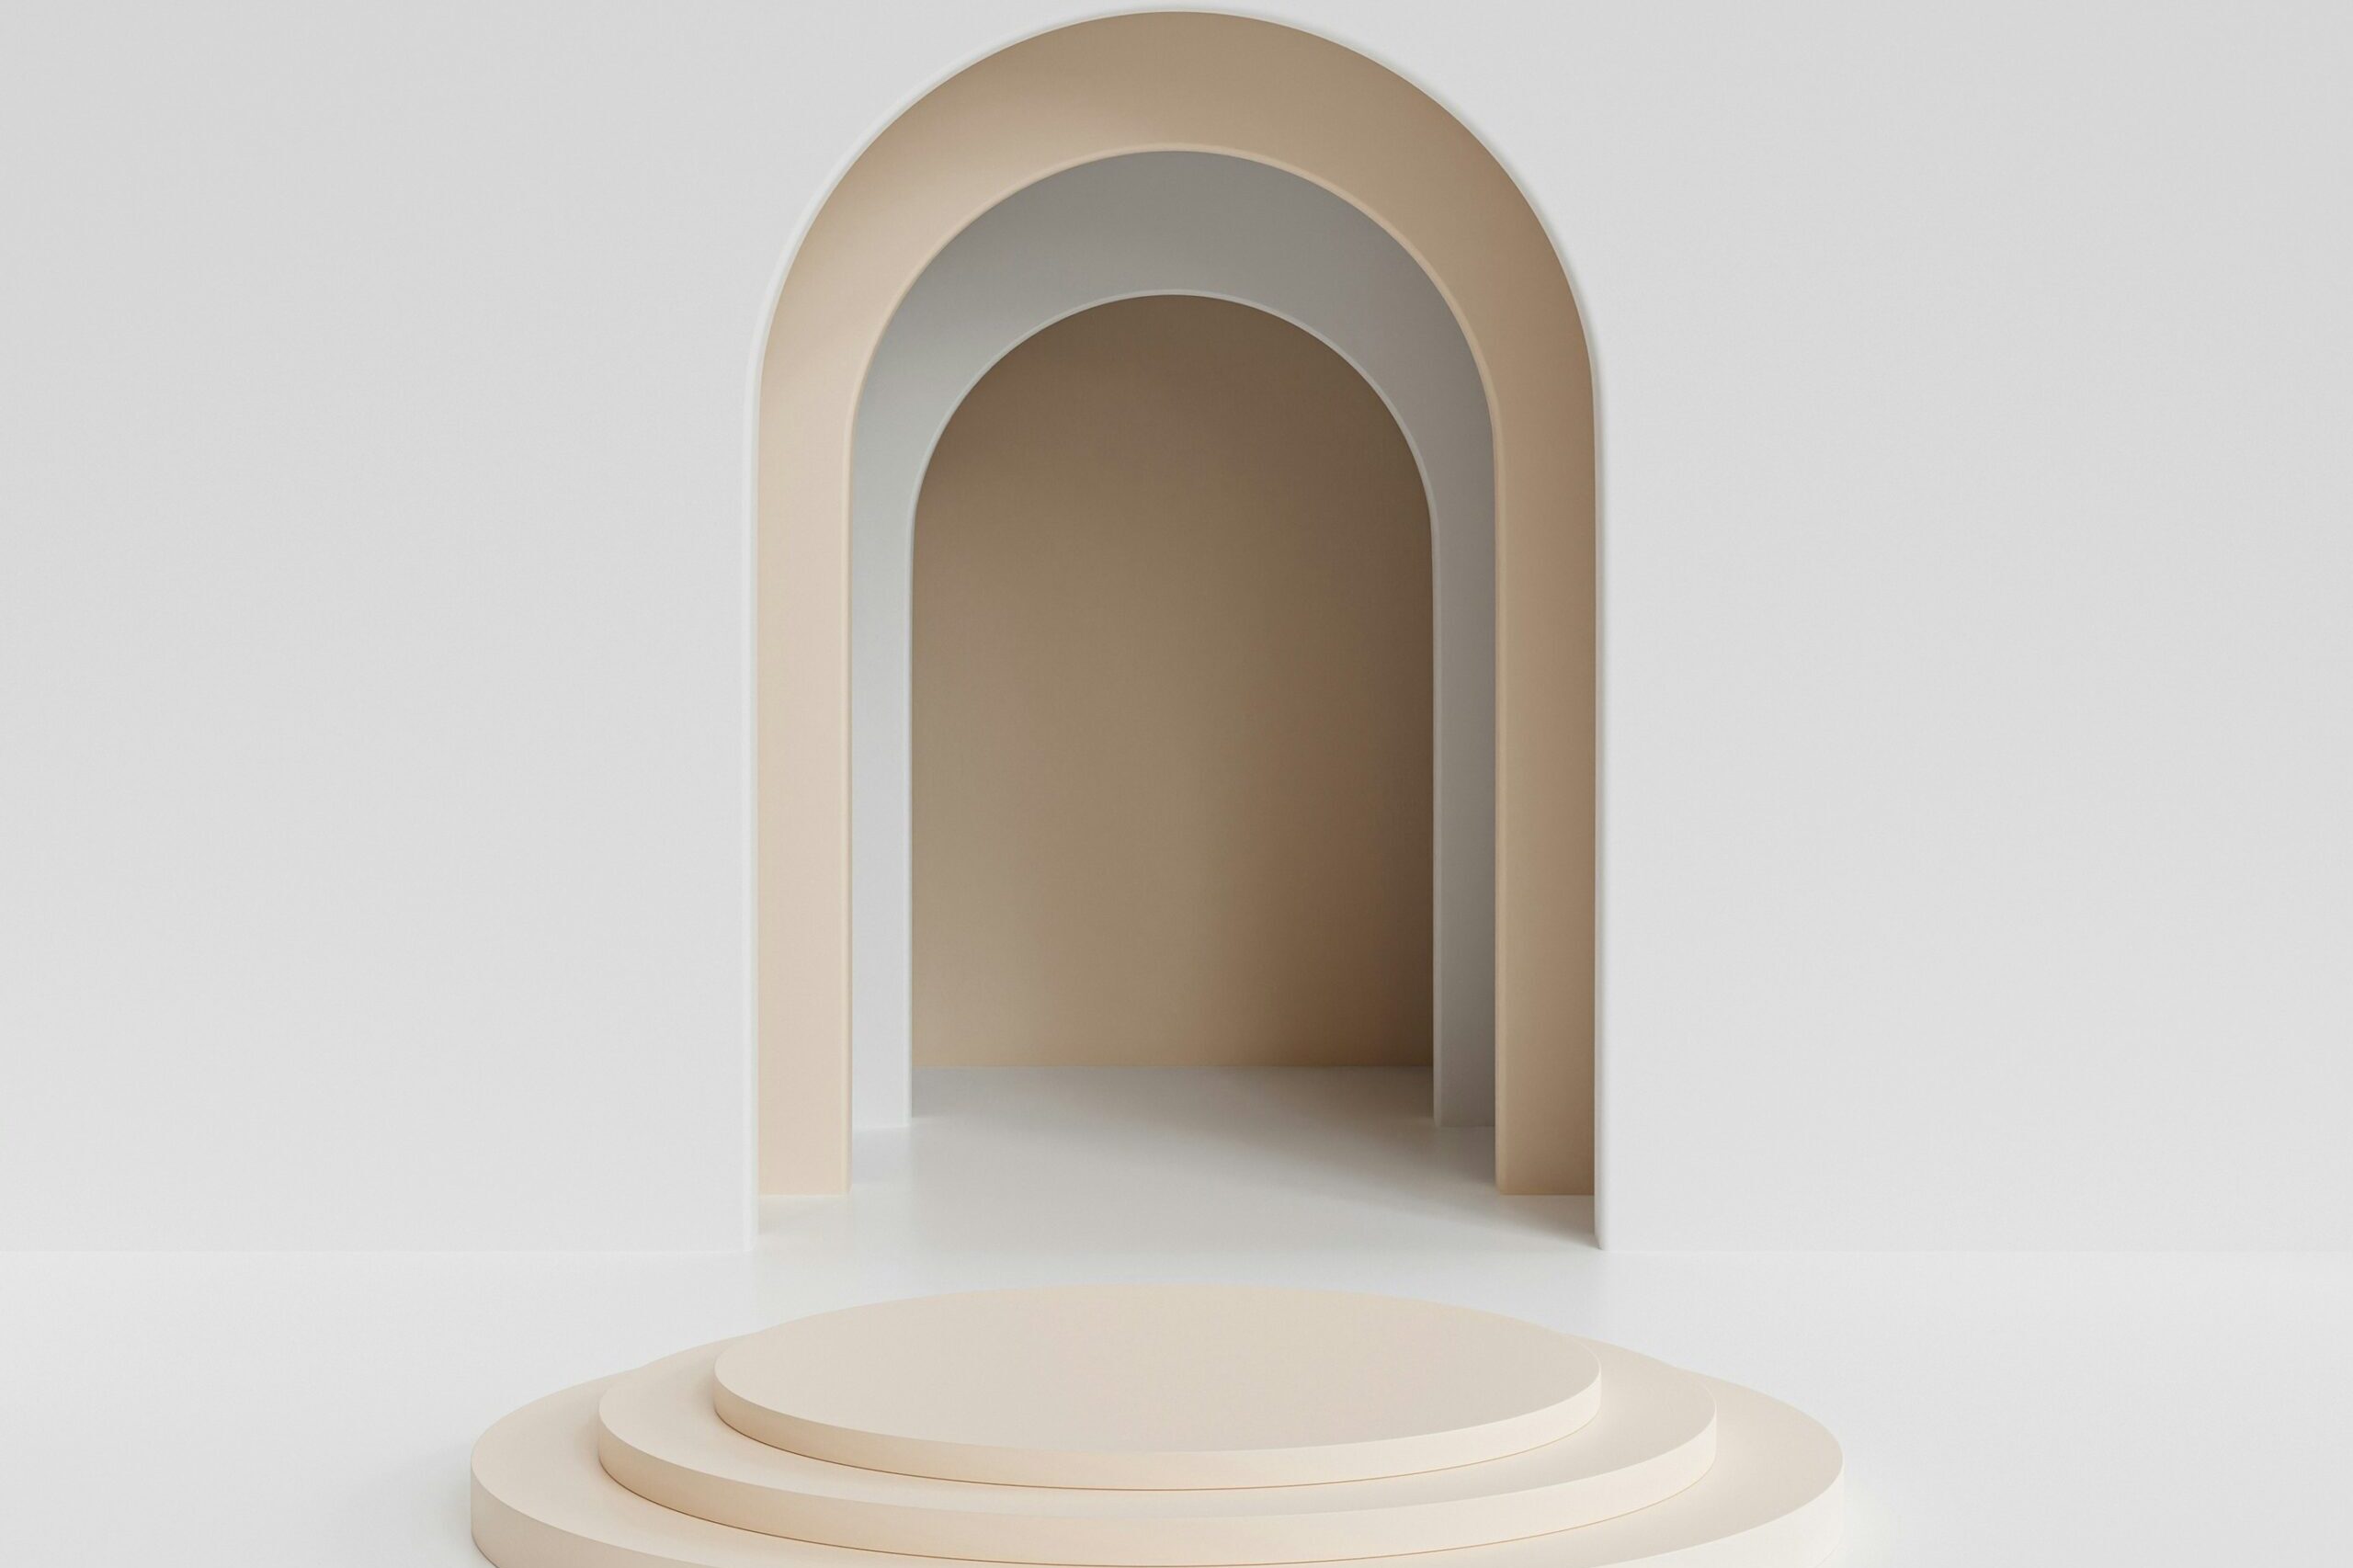 en abstrakt hvit tunnel med en udefinert ende